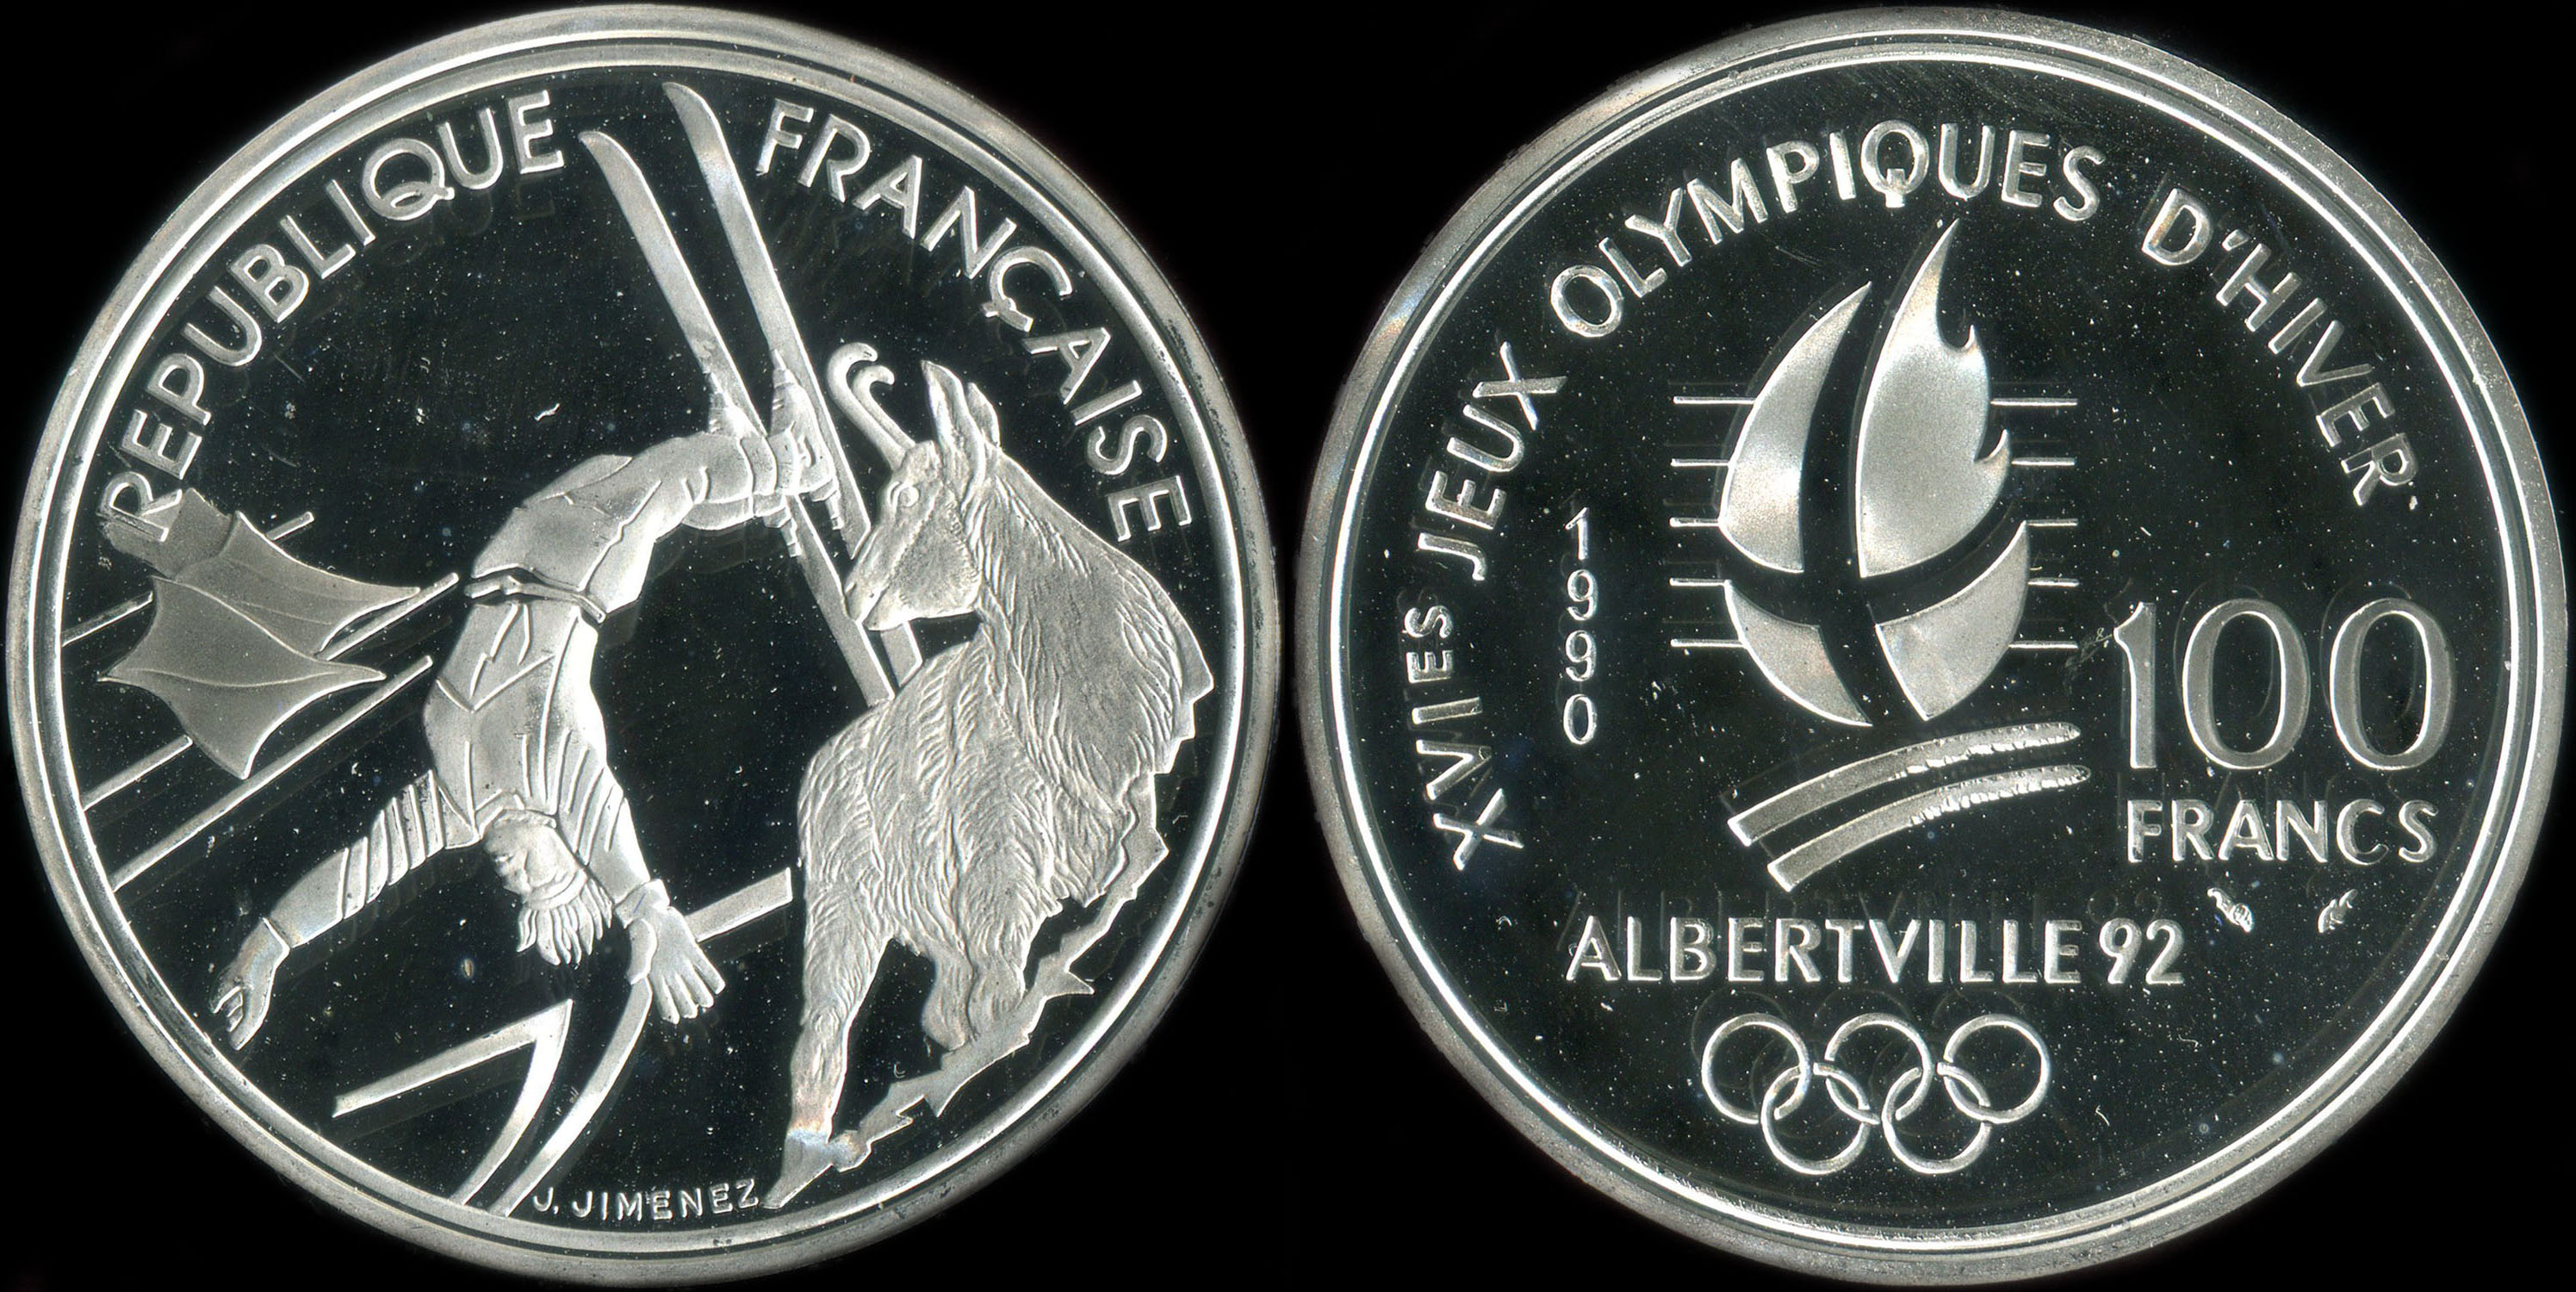 Pièce de 100 francs 1990 - XVIes Jeux Olympiques d'Hiver - Albertville 92 - Ski Acrobatique - Chamois